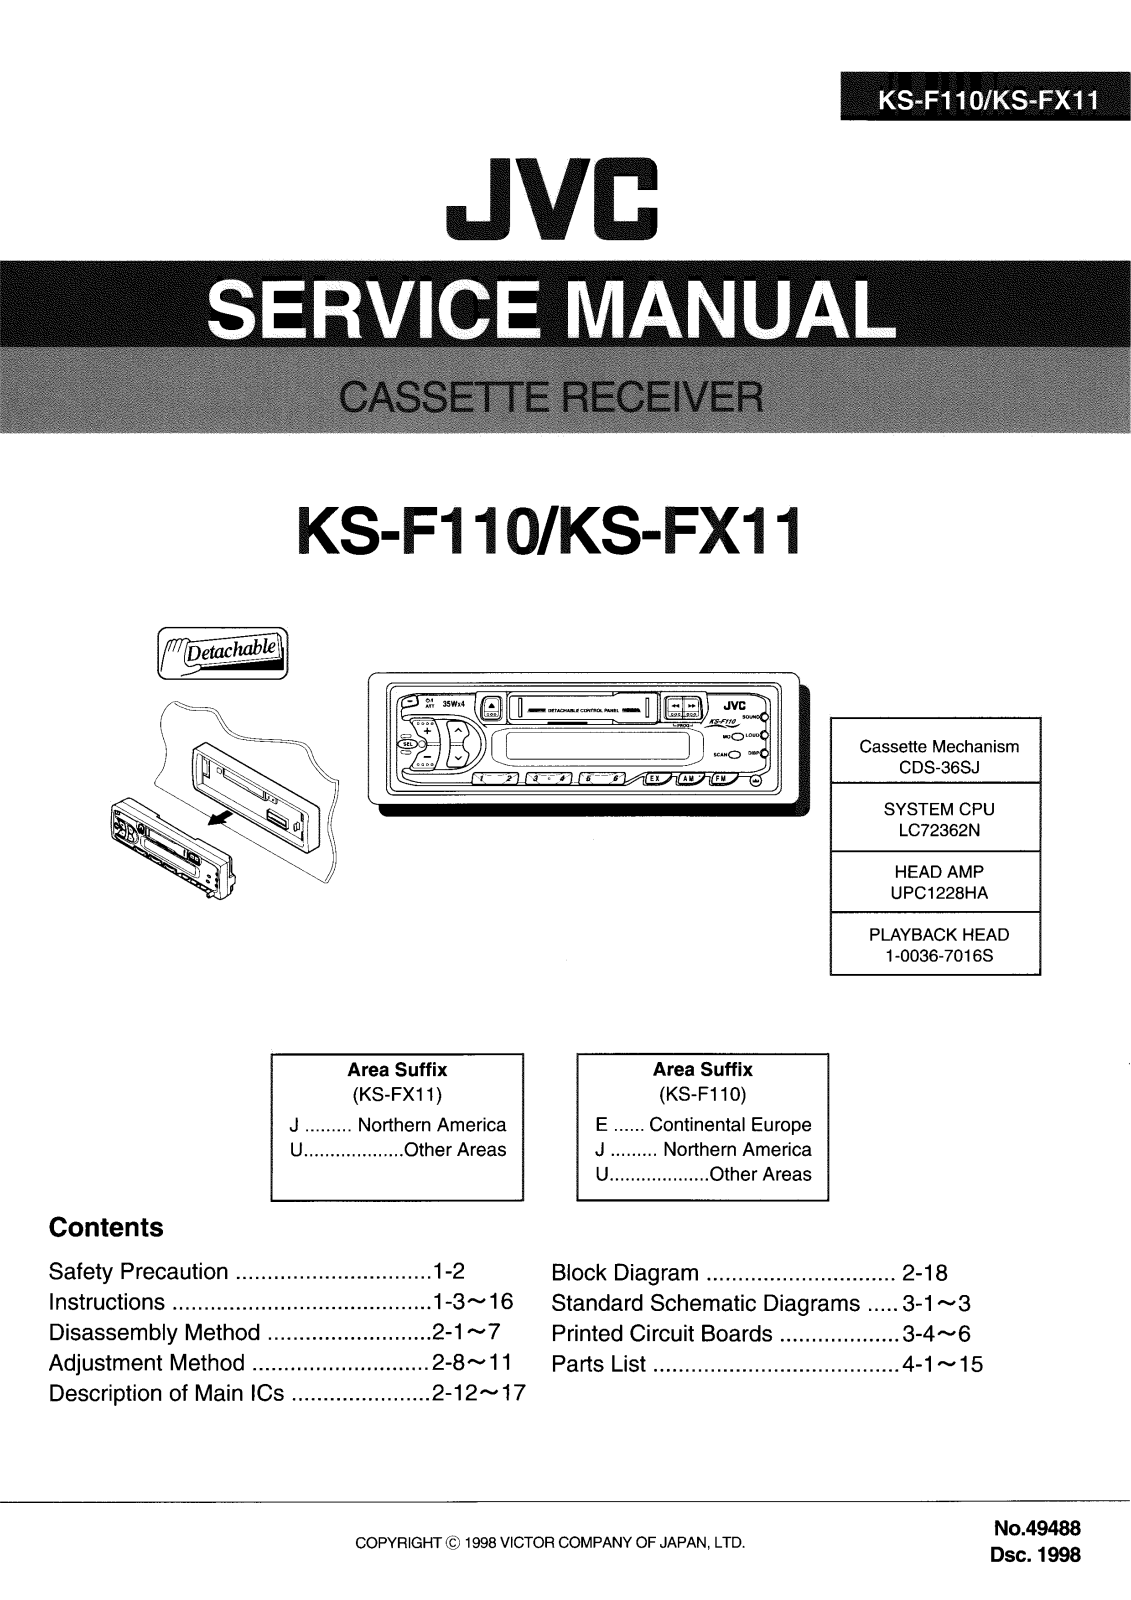 JVC KSF-110, KSFX-11 Service manual